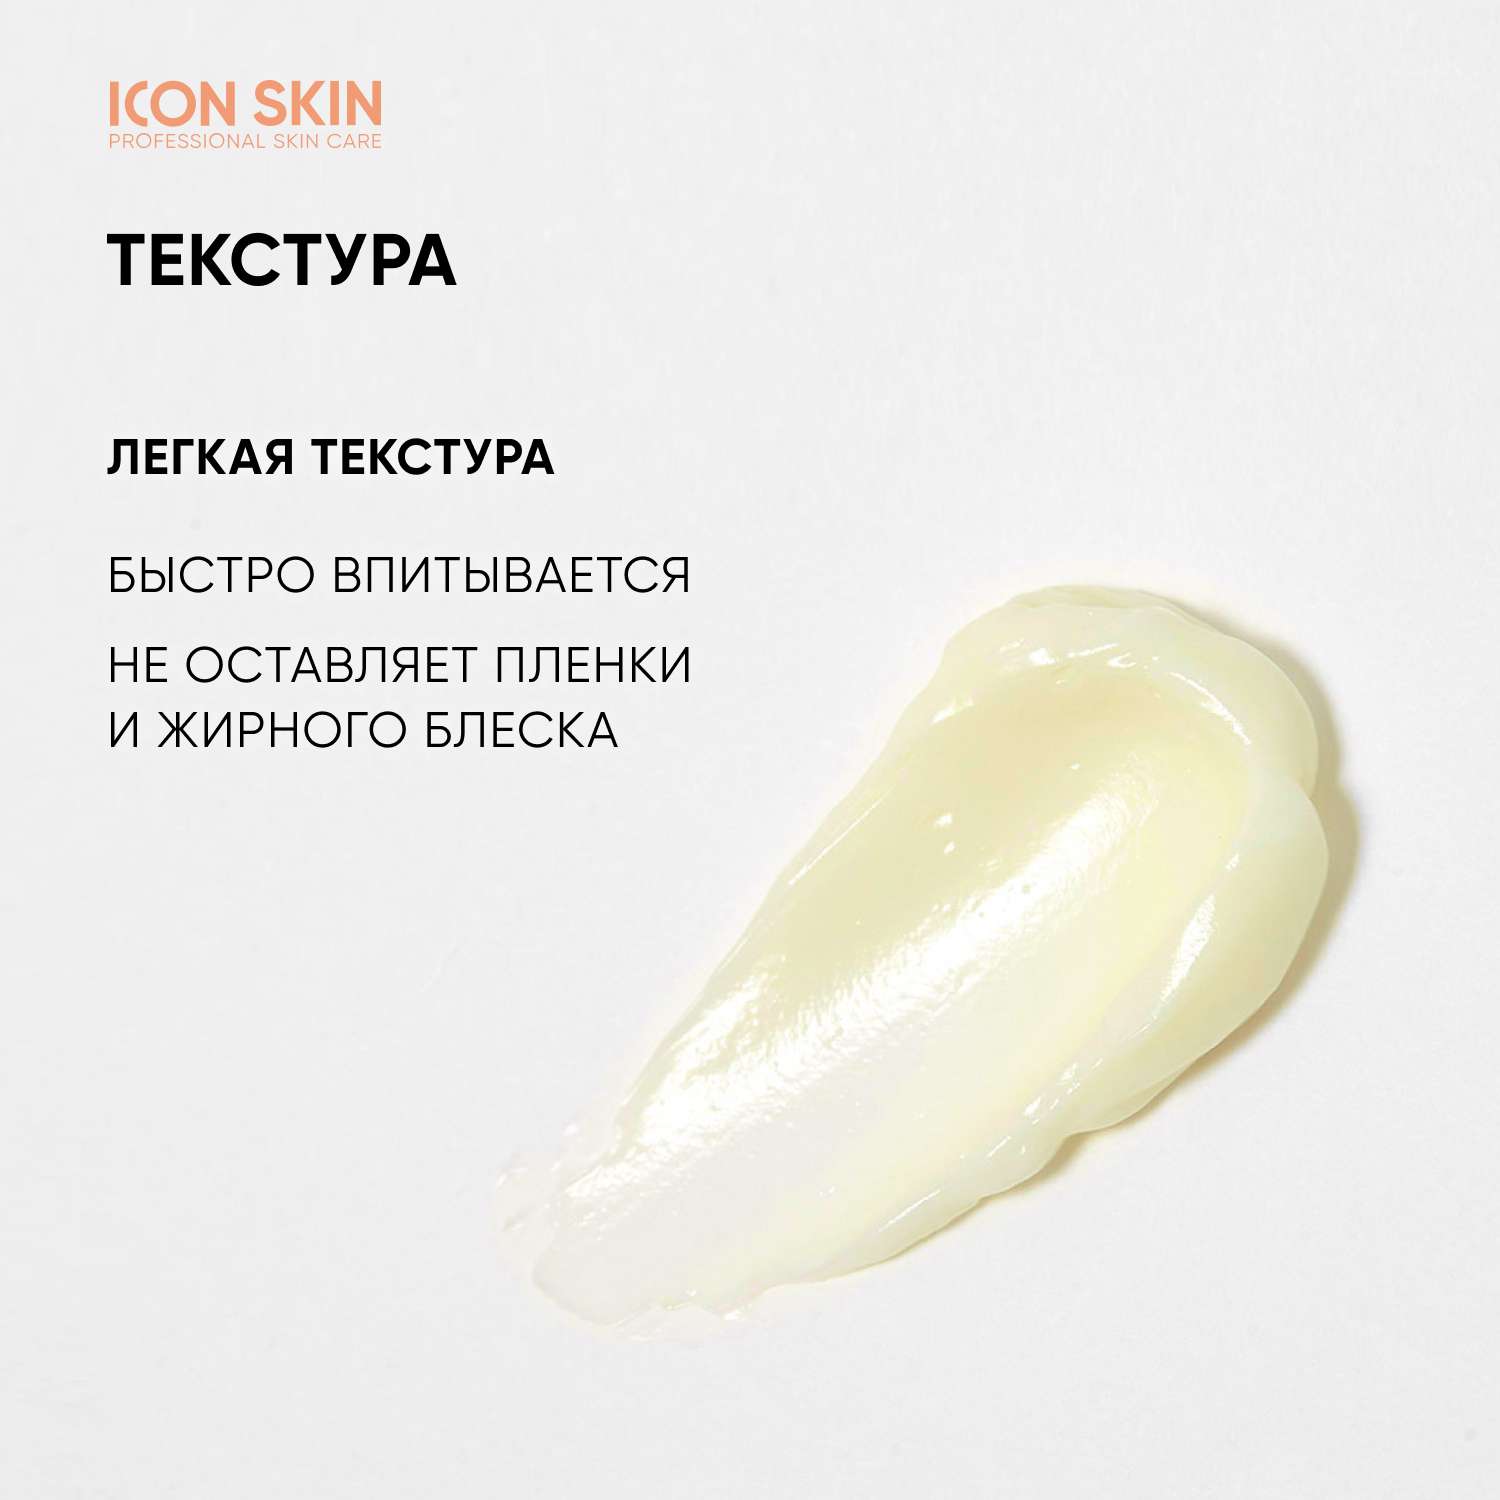 Мультиактивный крем ICON SKIN Vitamin C Radiant для комбинированной и жирной кожи - фото 6